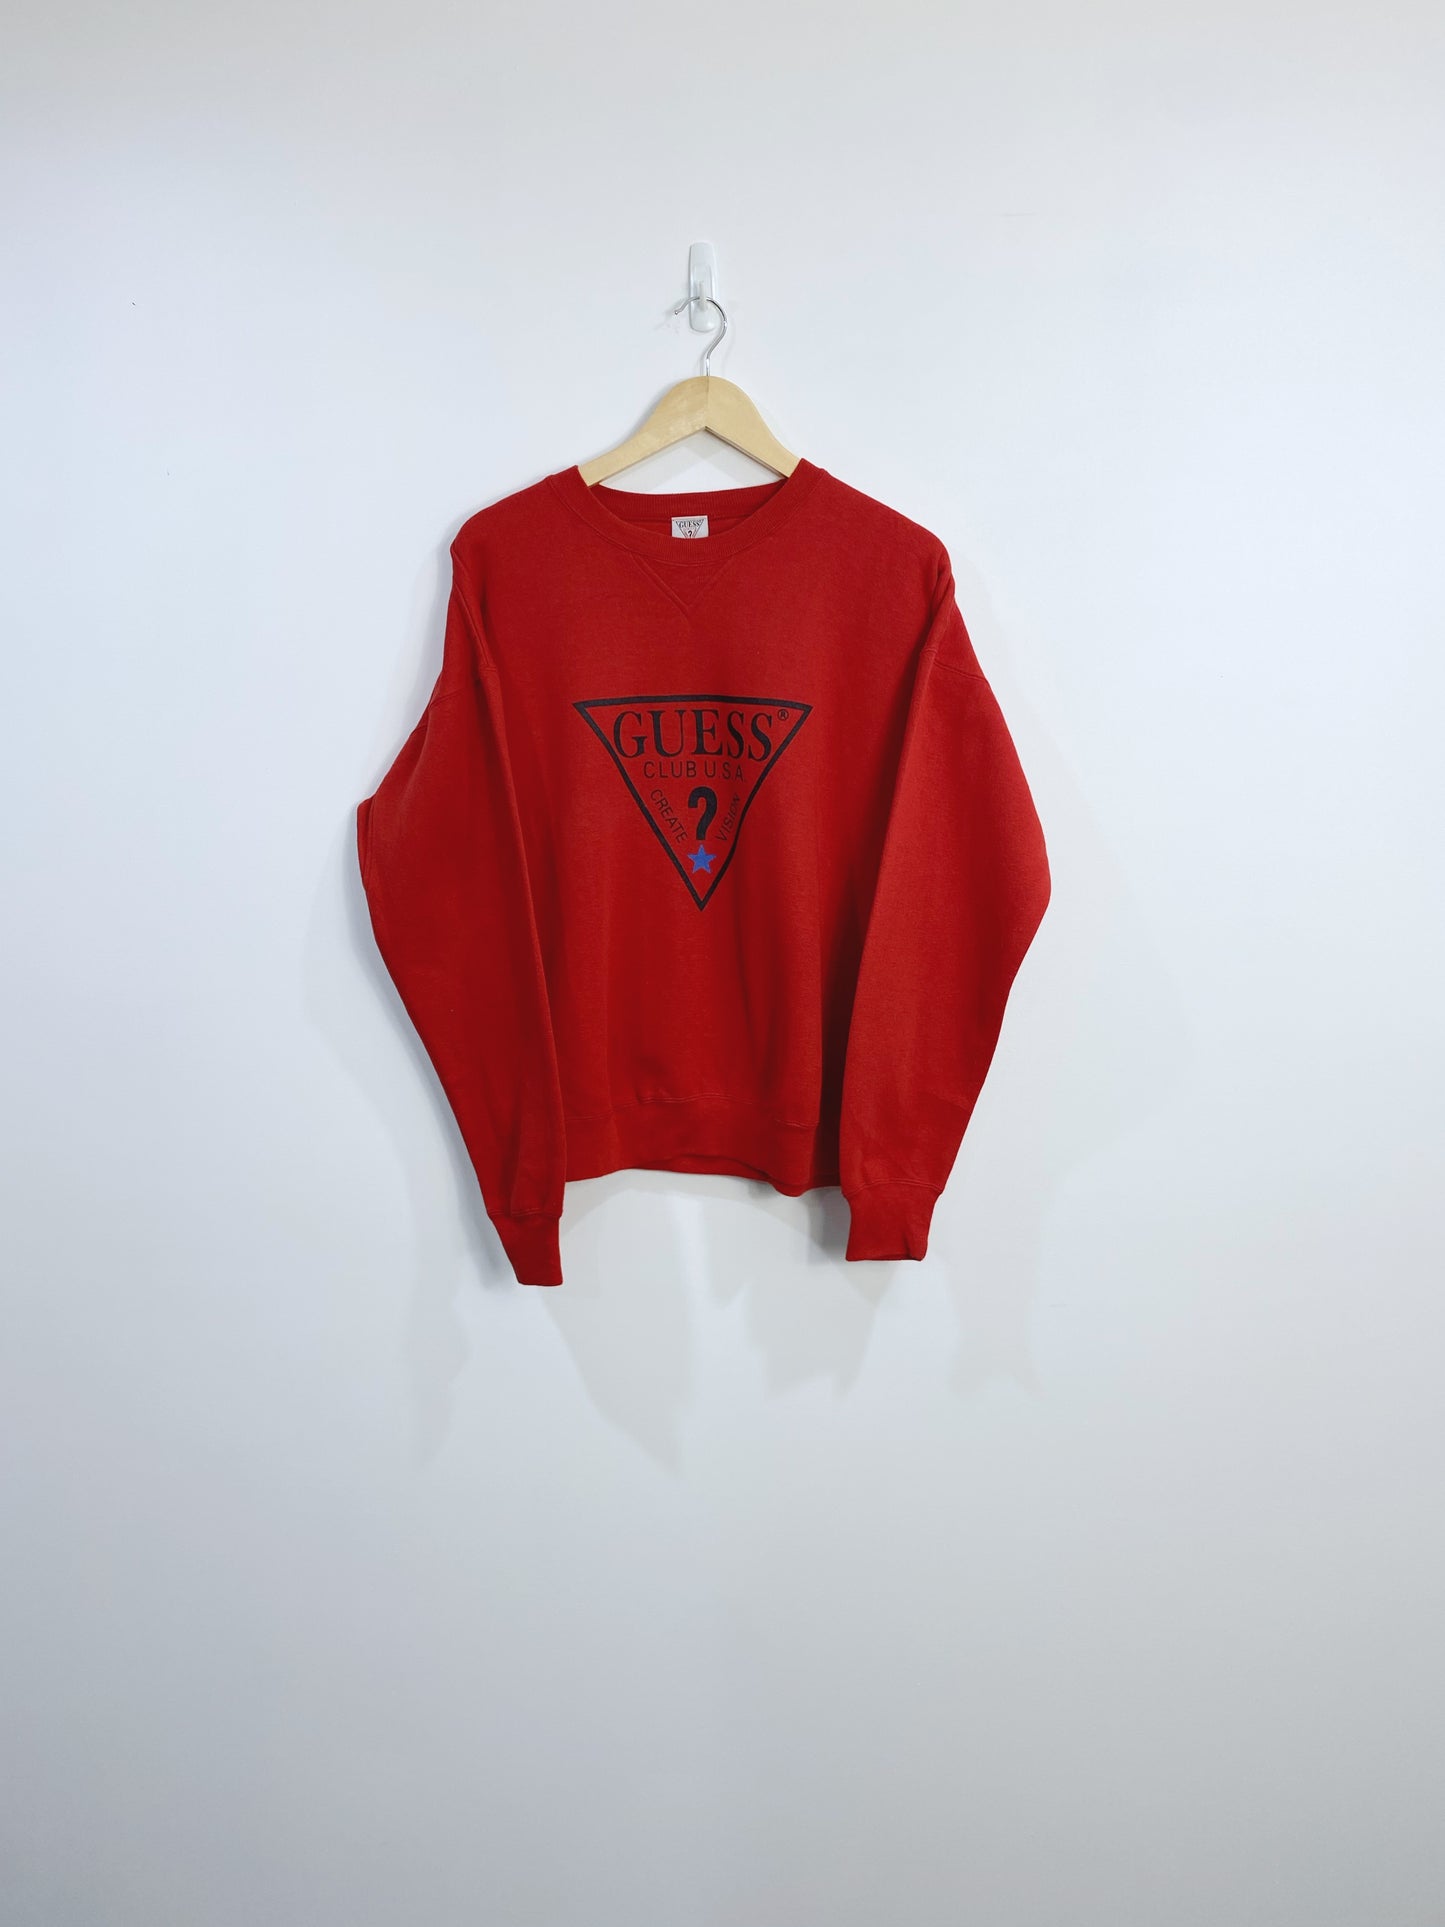 Vintage 90s Guess Sweatshirt L